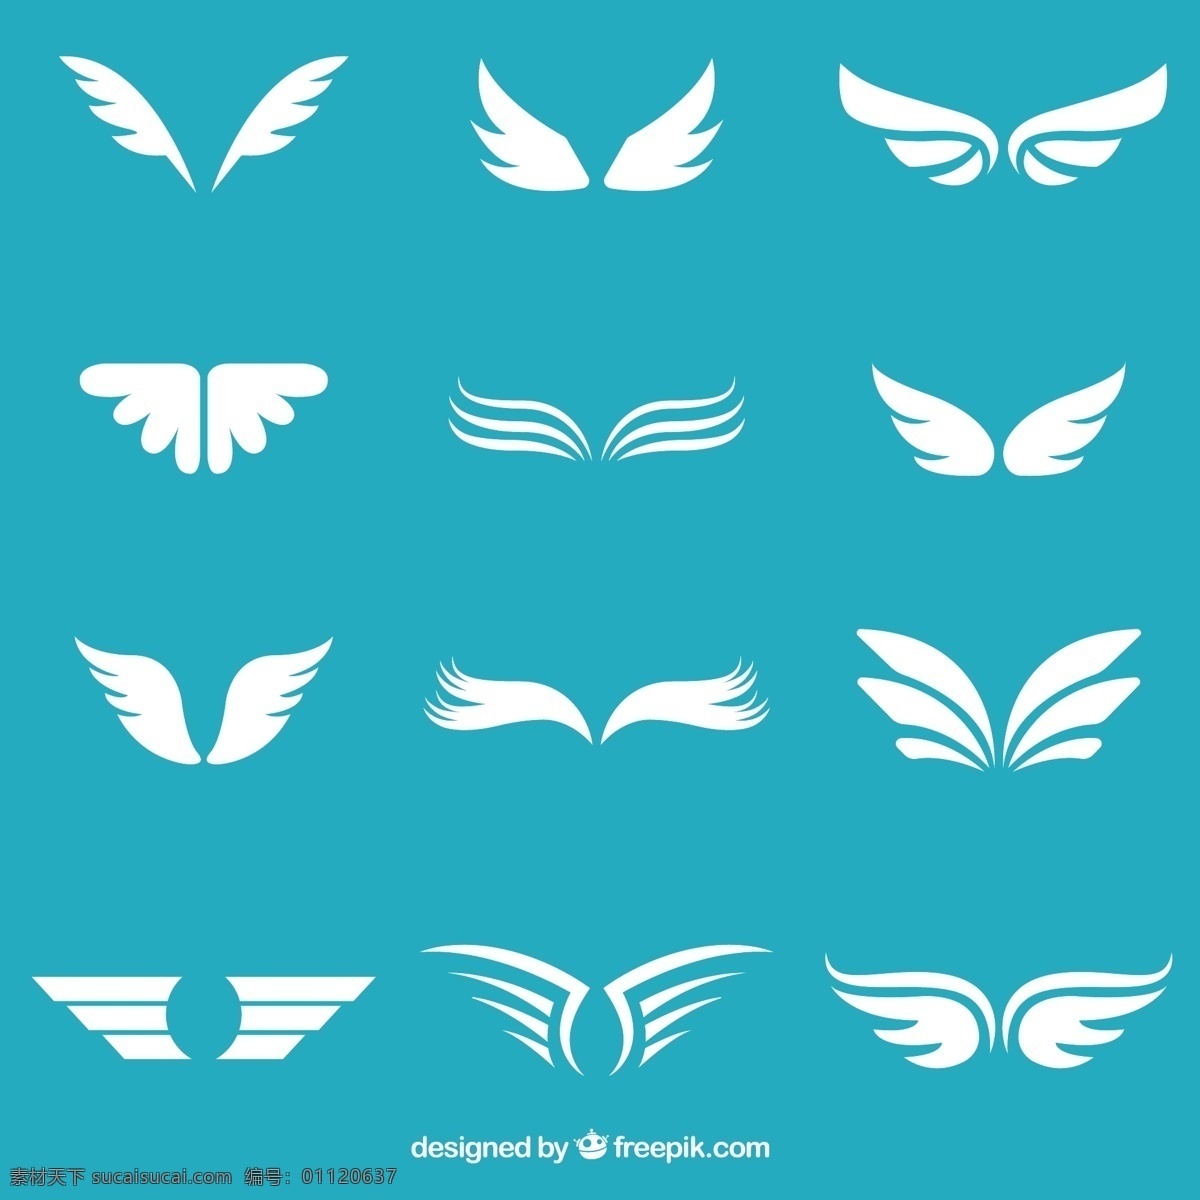 白色 翅膀 矢量 抽象 天使 标志 logo 矢量图 ai格式